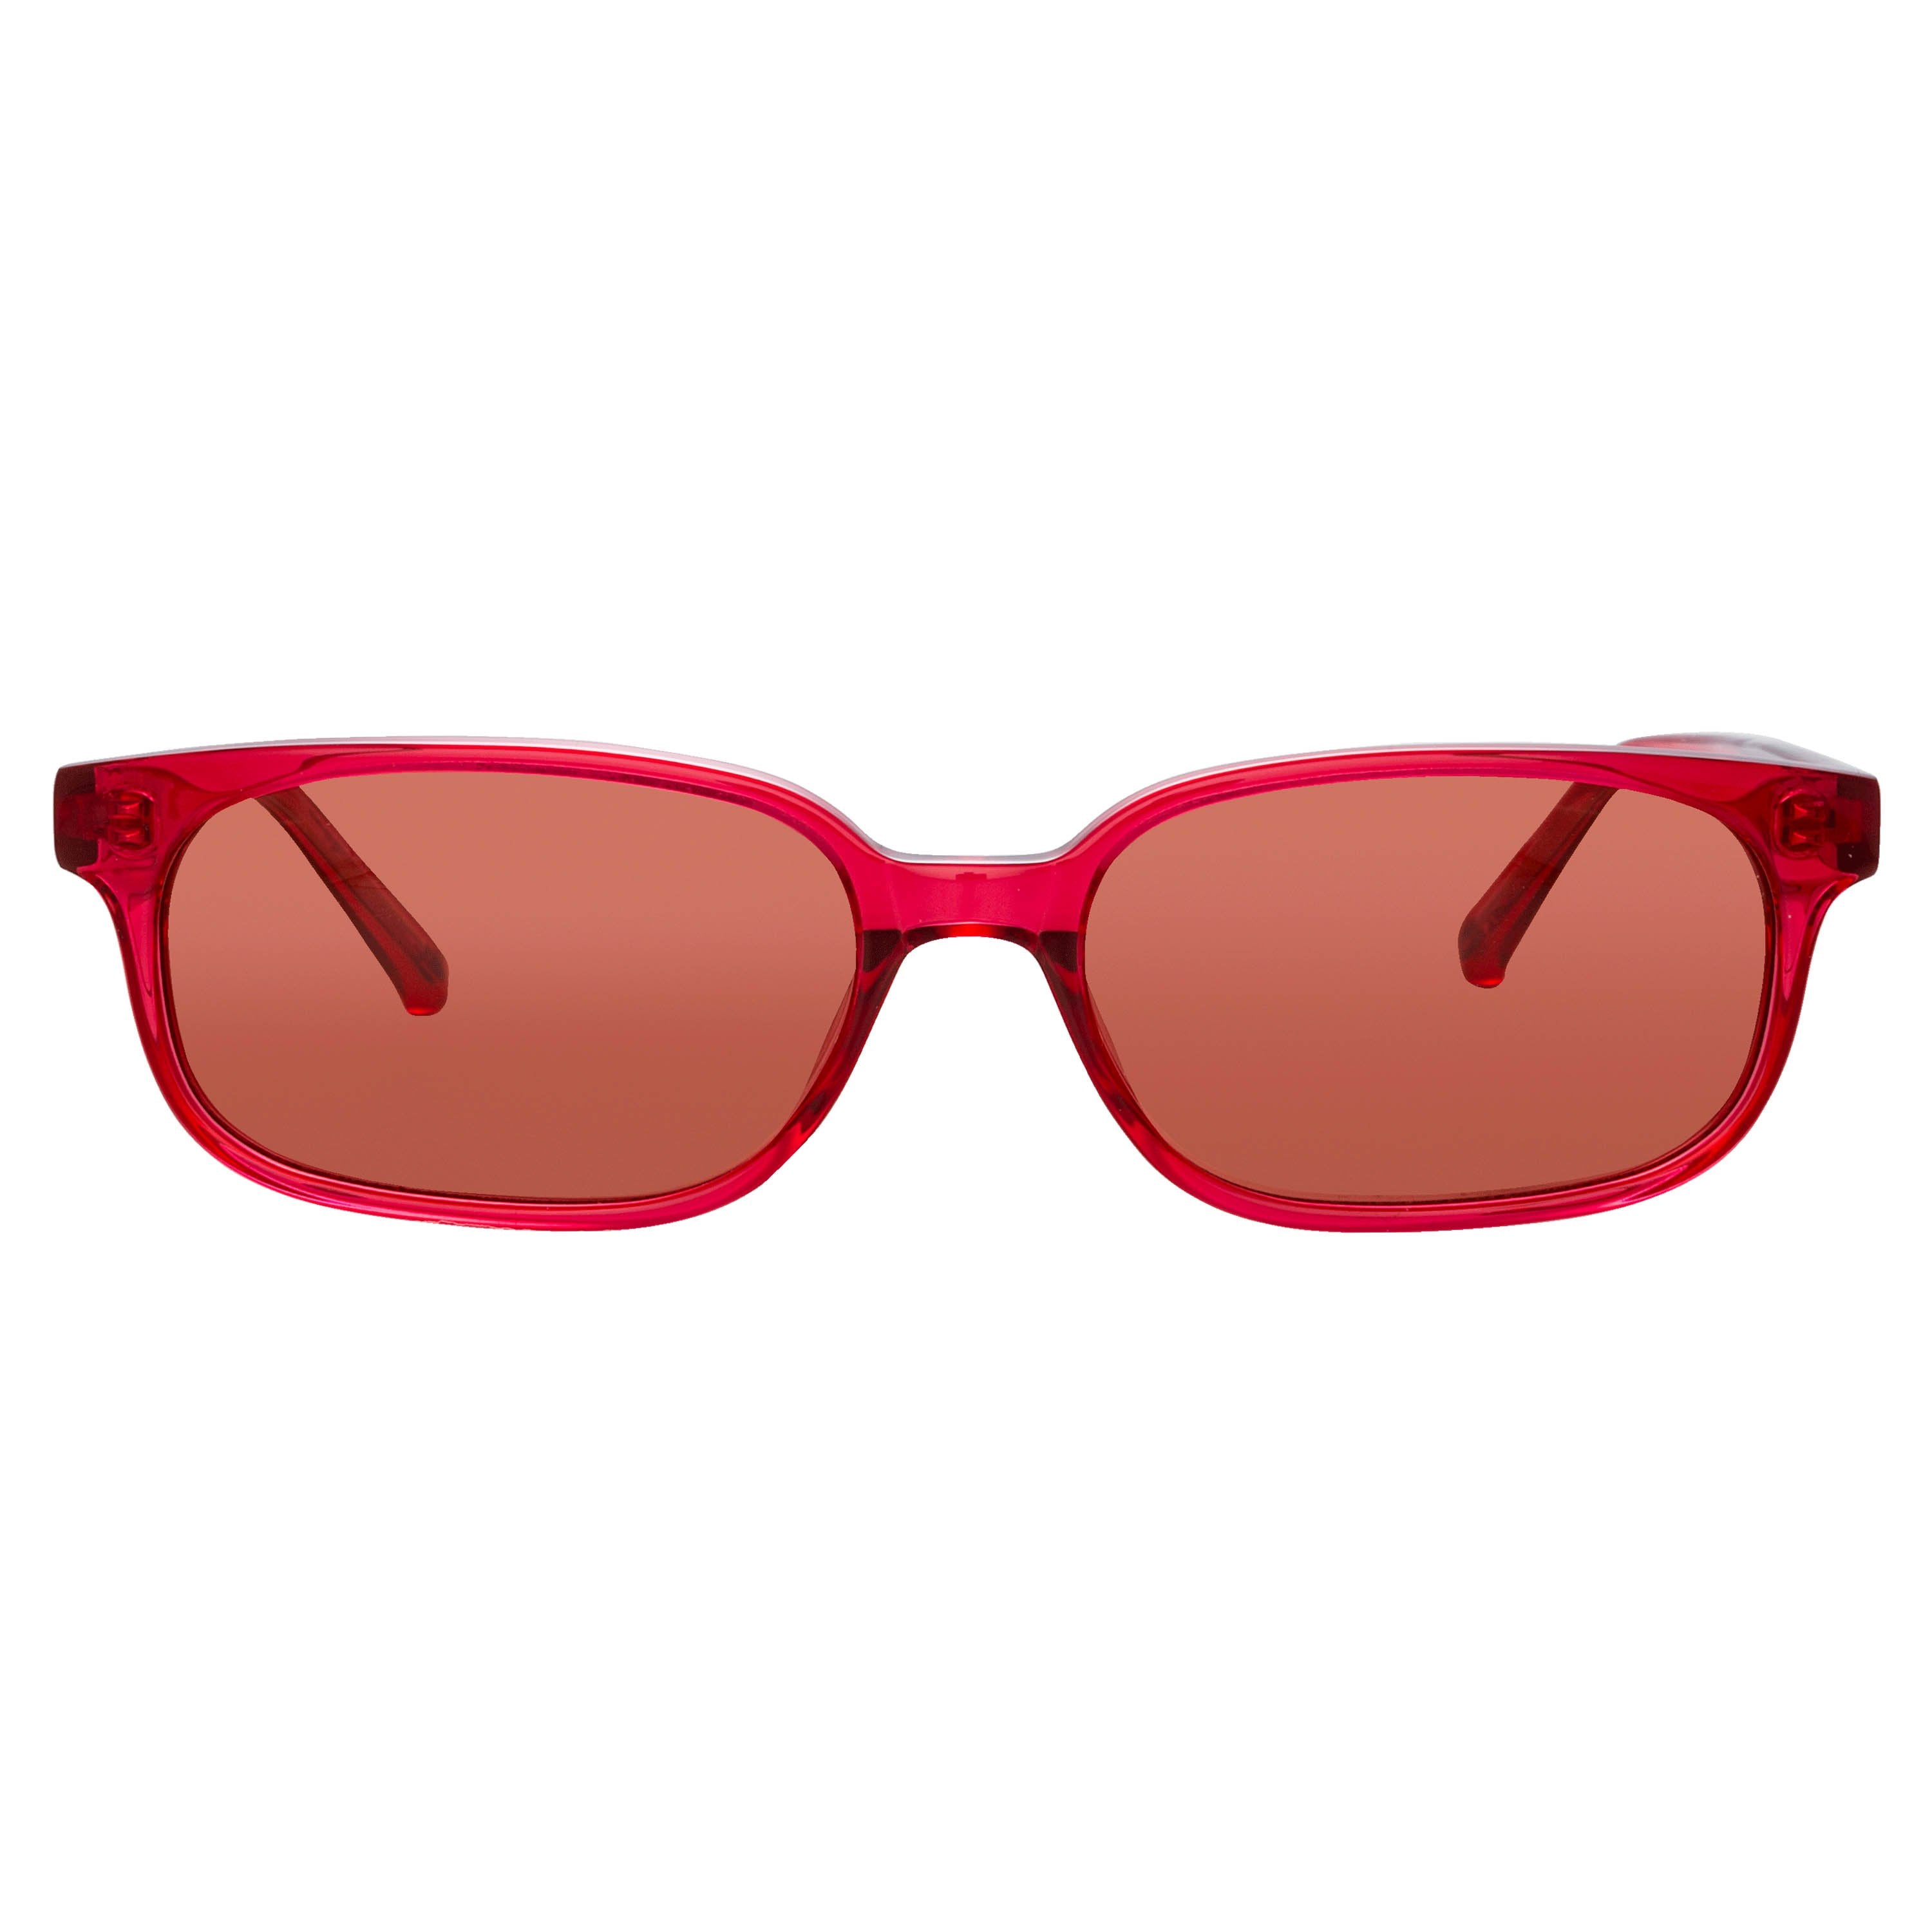 Color_ATTICO9C4SUN - The Attico Gigi Rectangular Sunglasses in Red